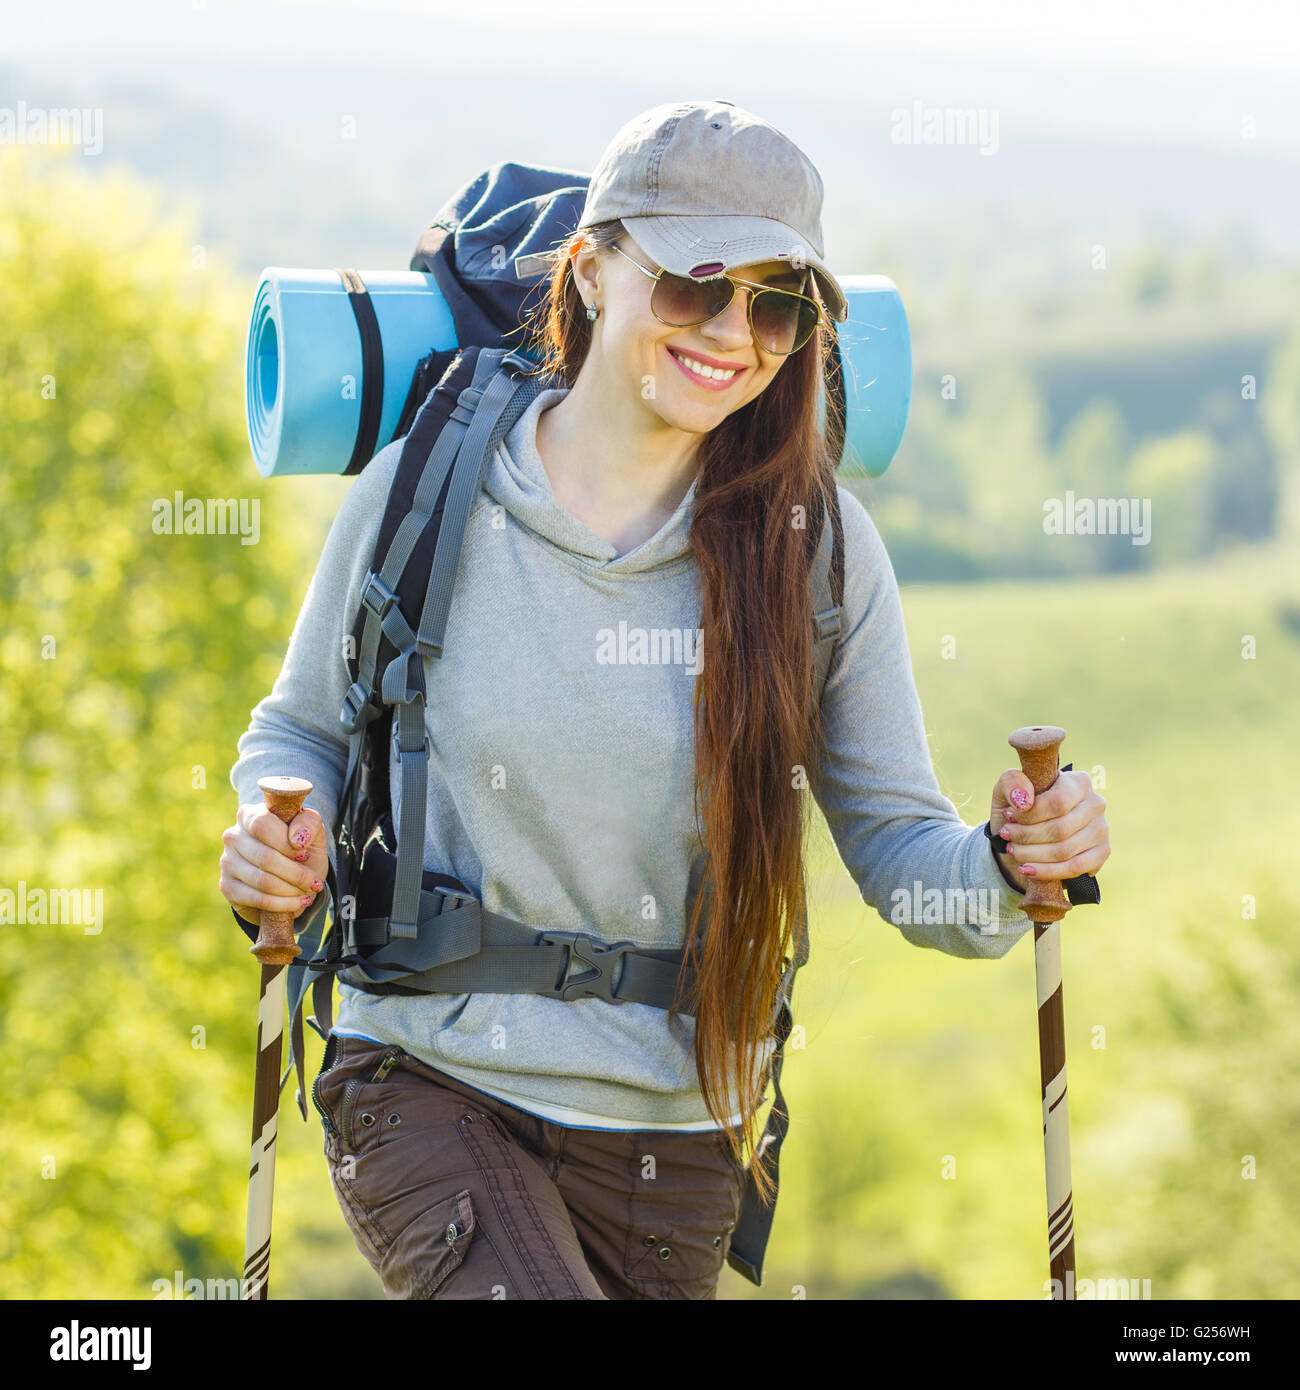 Hiker backpacker girl enjoying journey in countryside. Smiling girl in ...